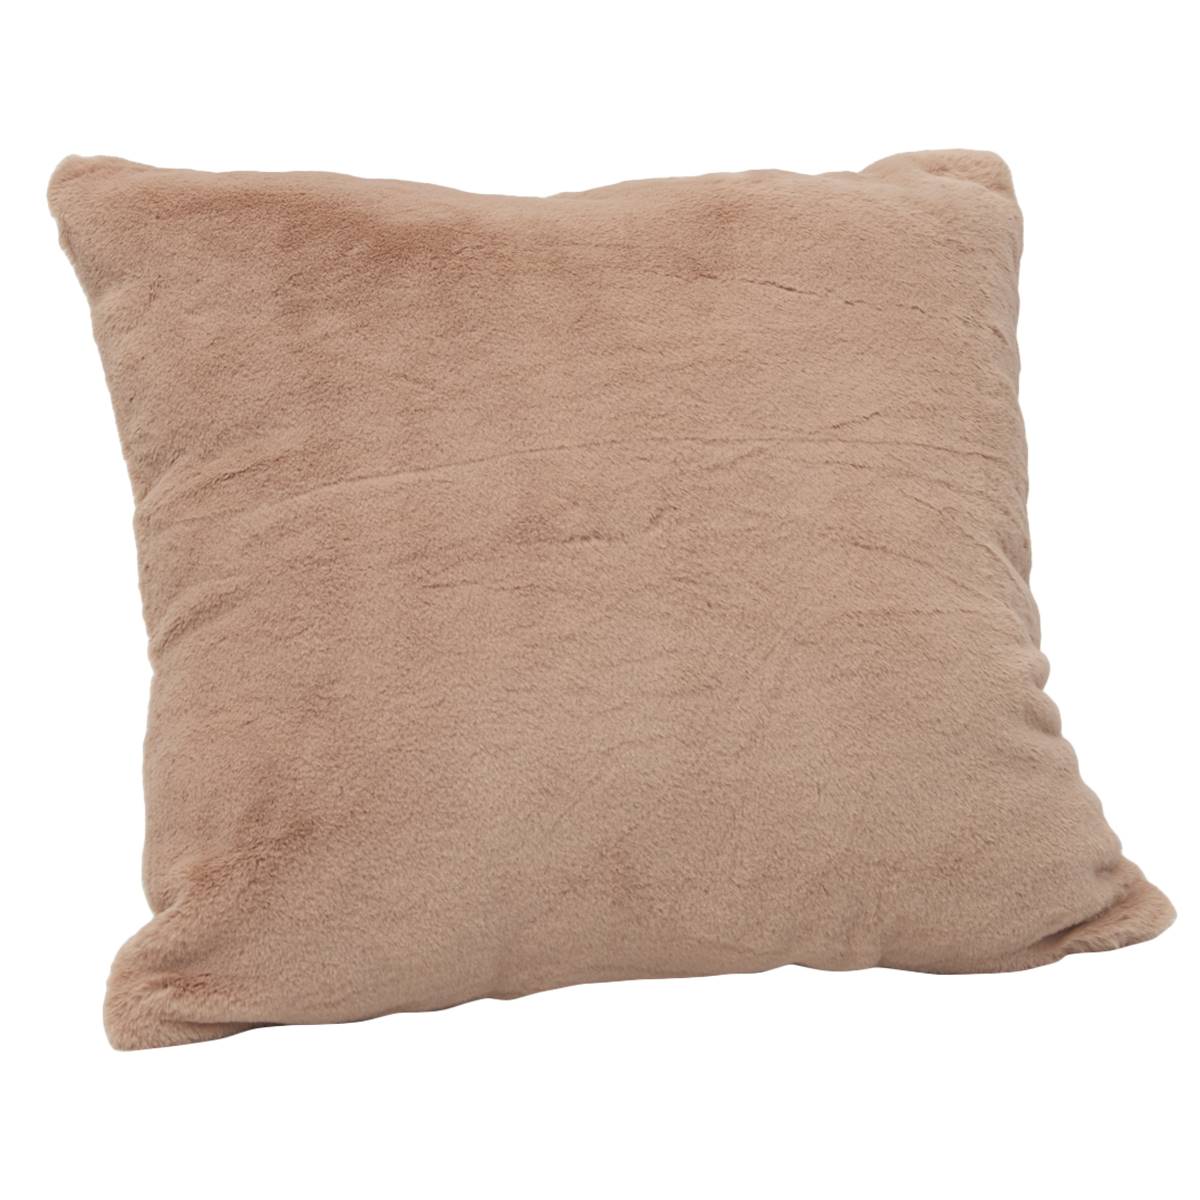 Cottontail Decorative Pillow - 22x22